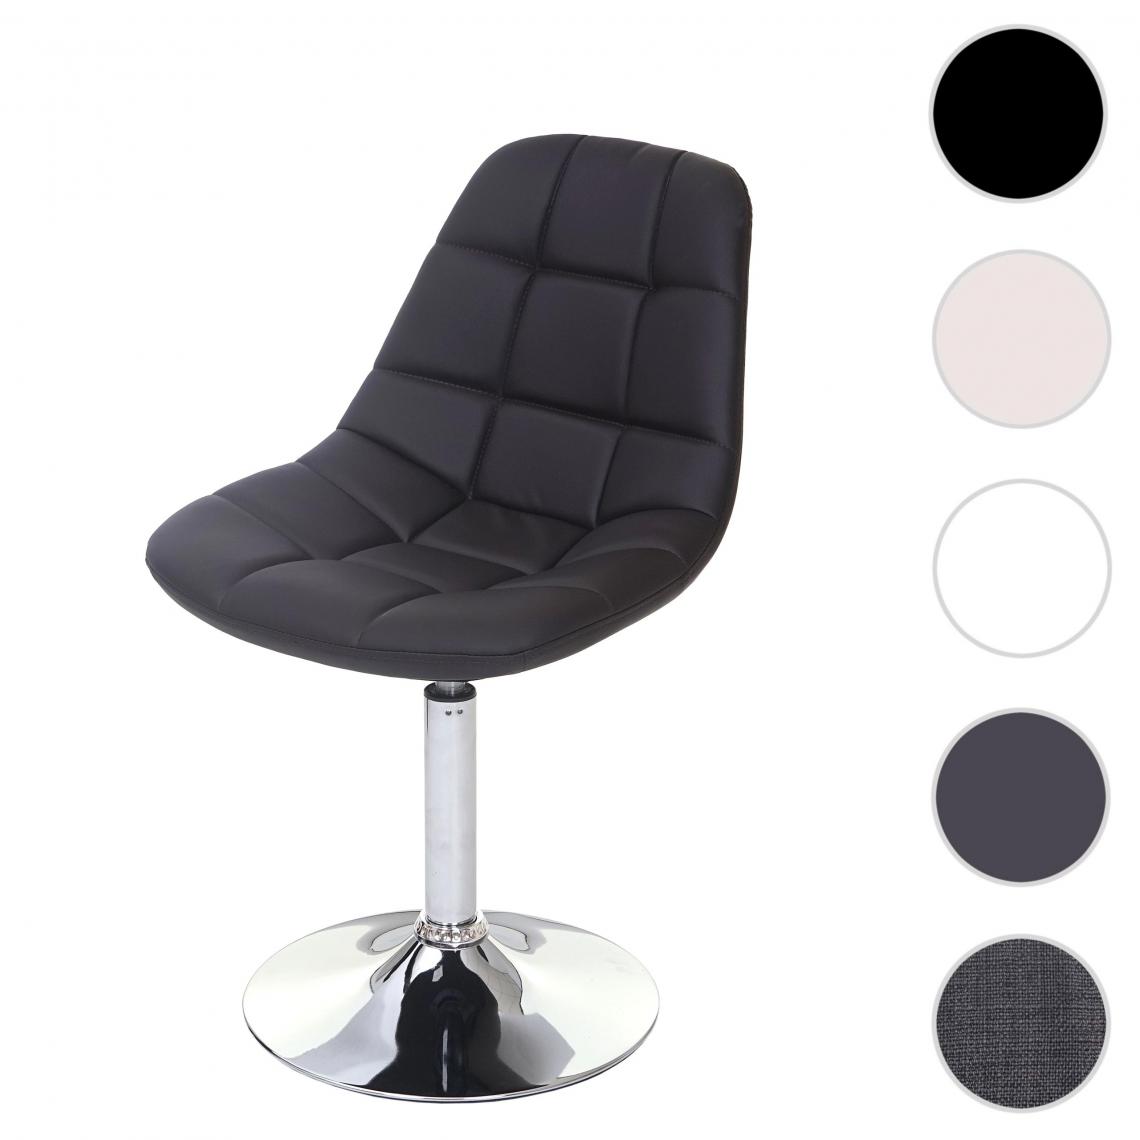 Mendler - Chaise de salle a  manger HWC-A60, chaise pivotante, design rétro ~ similicuir marron, pied chromé - Chaises